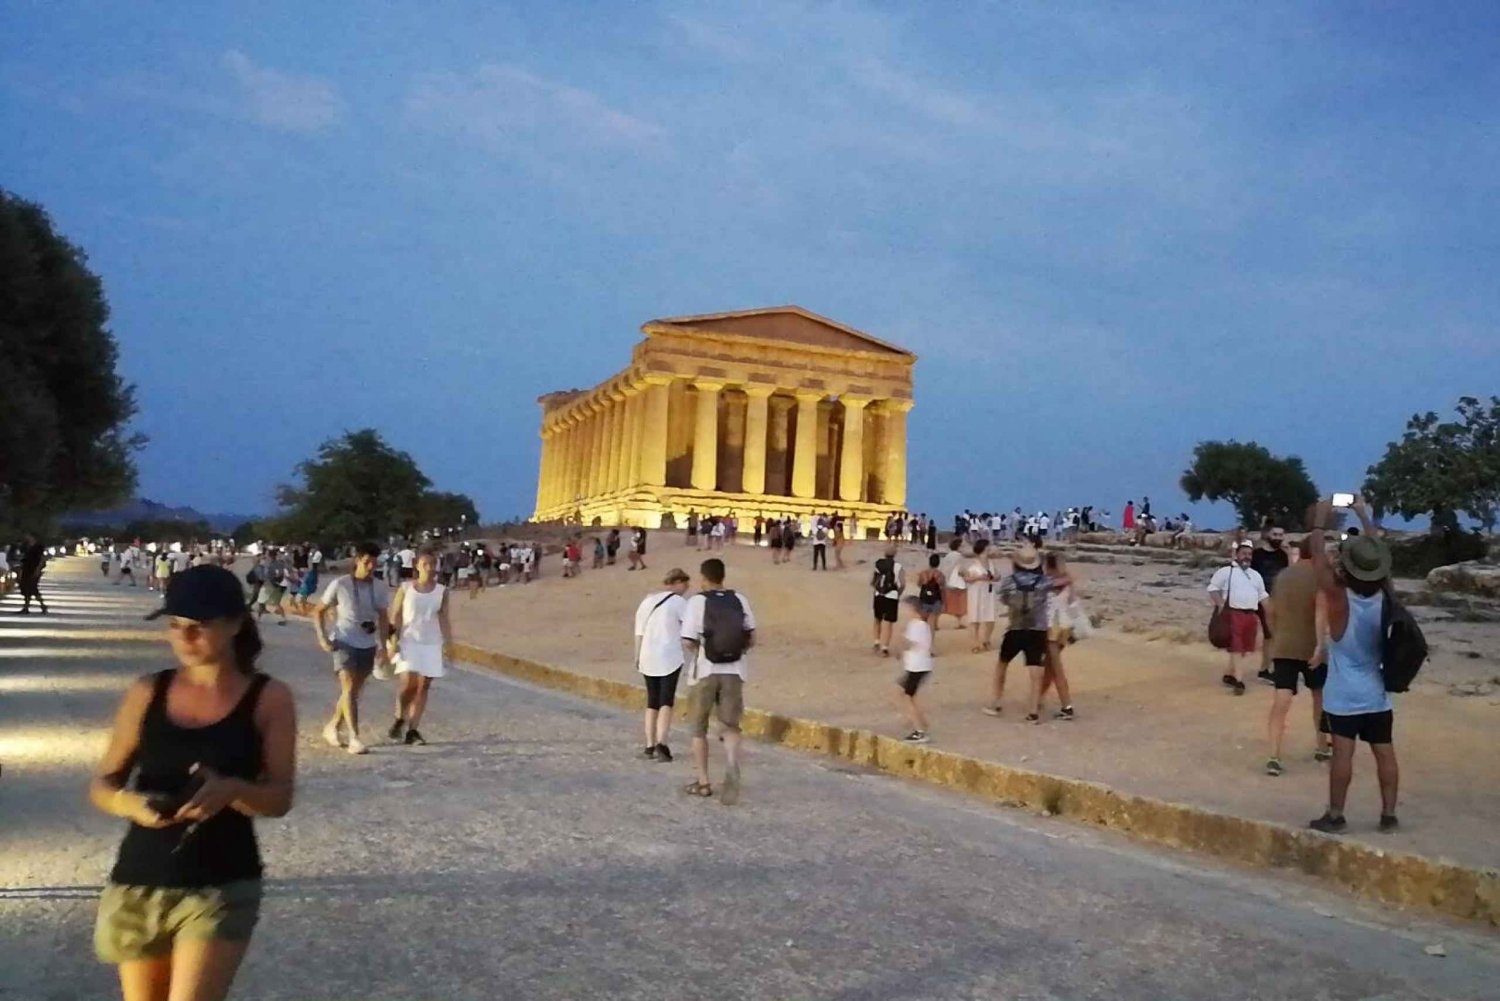 Agrigento: excursão noturna sem fila ao vale dos templos